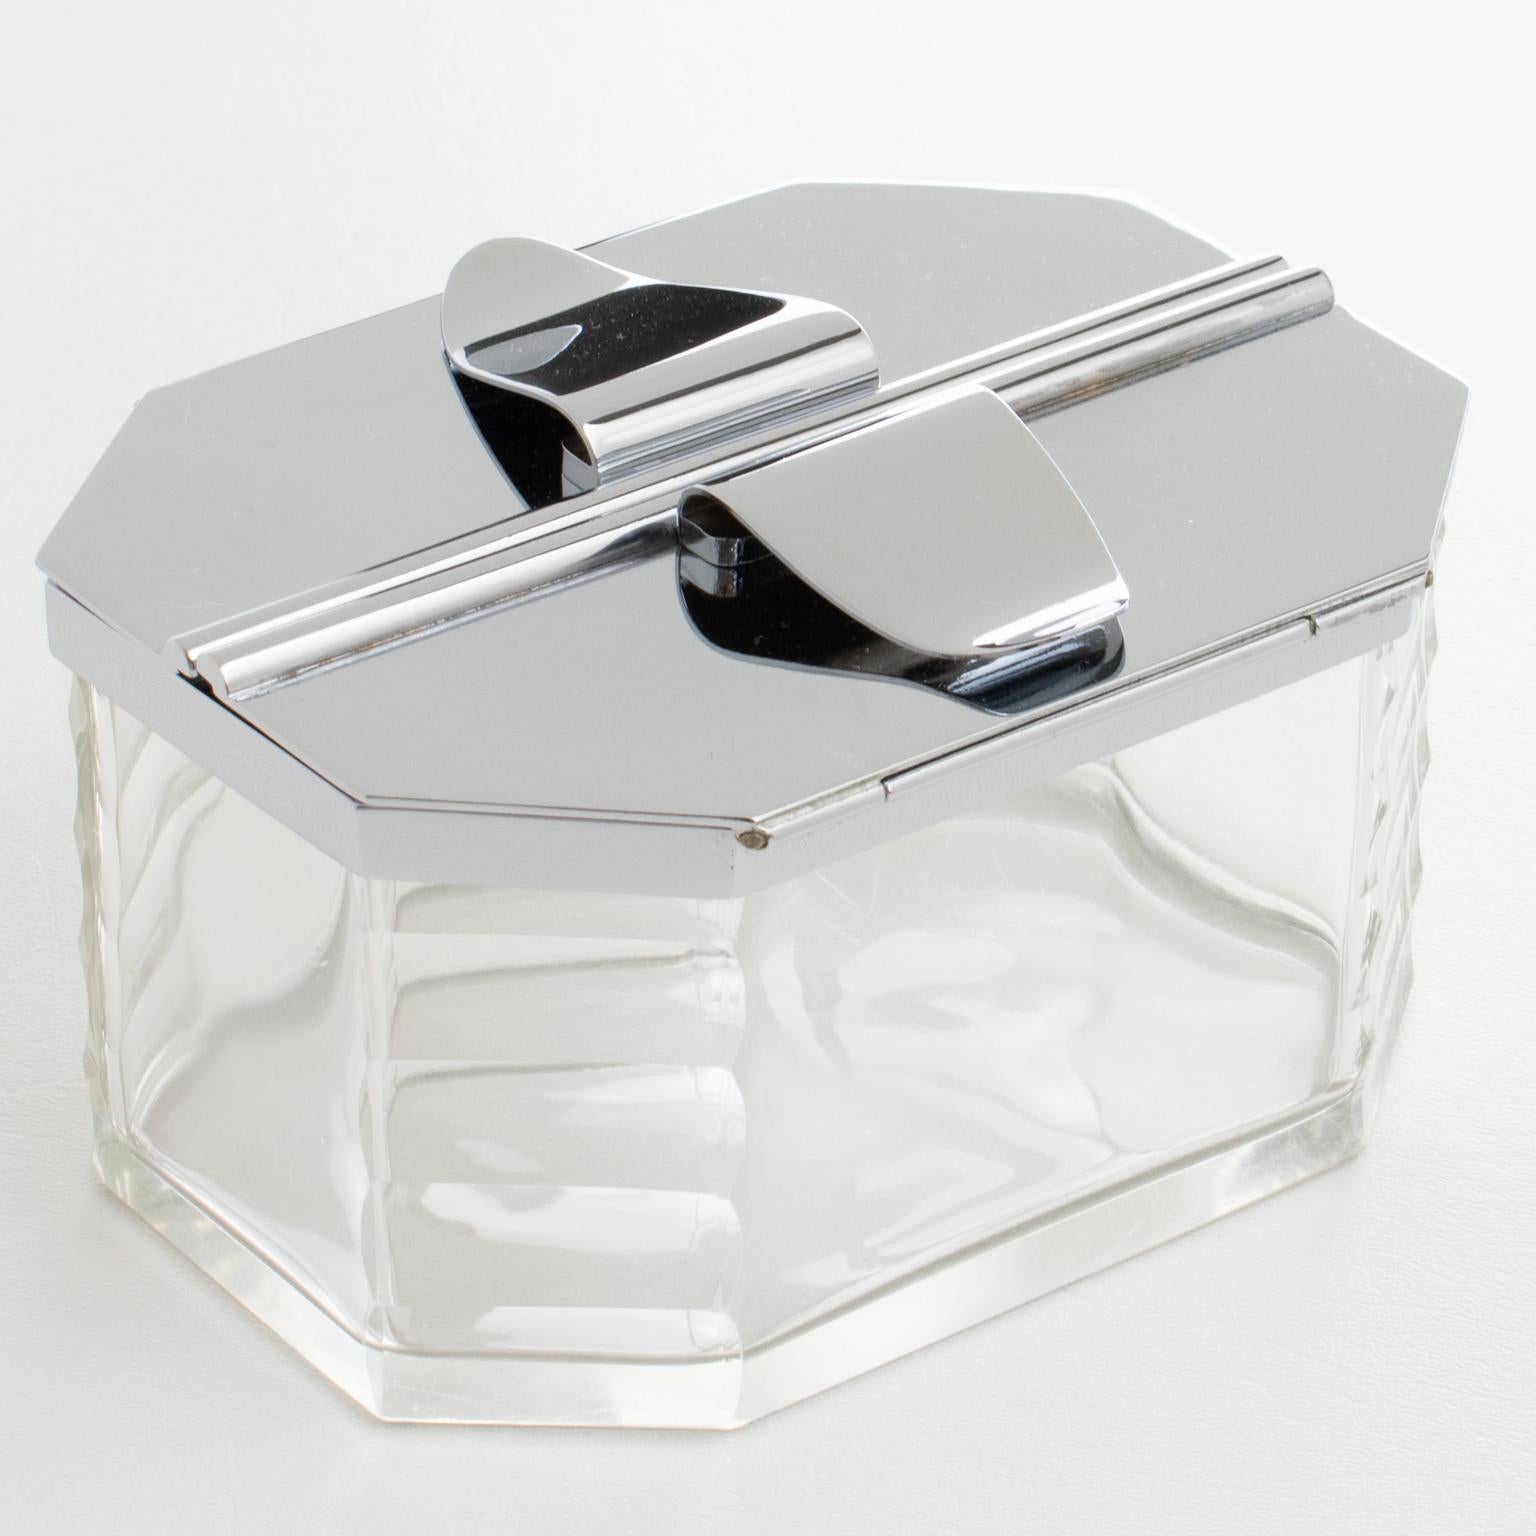 L'orfèvre français François Frionnet, Paris, a conçu et fabriqué cette élégante boîte à biscuits décorative Art déco en chrome et en cristal dans les années 1930. Le design moderniste et minimaliste se caractérise par un récipient géométrique en